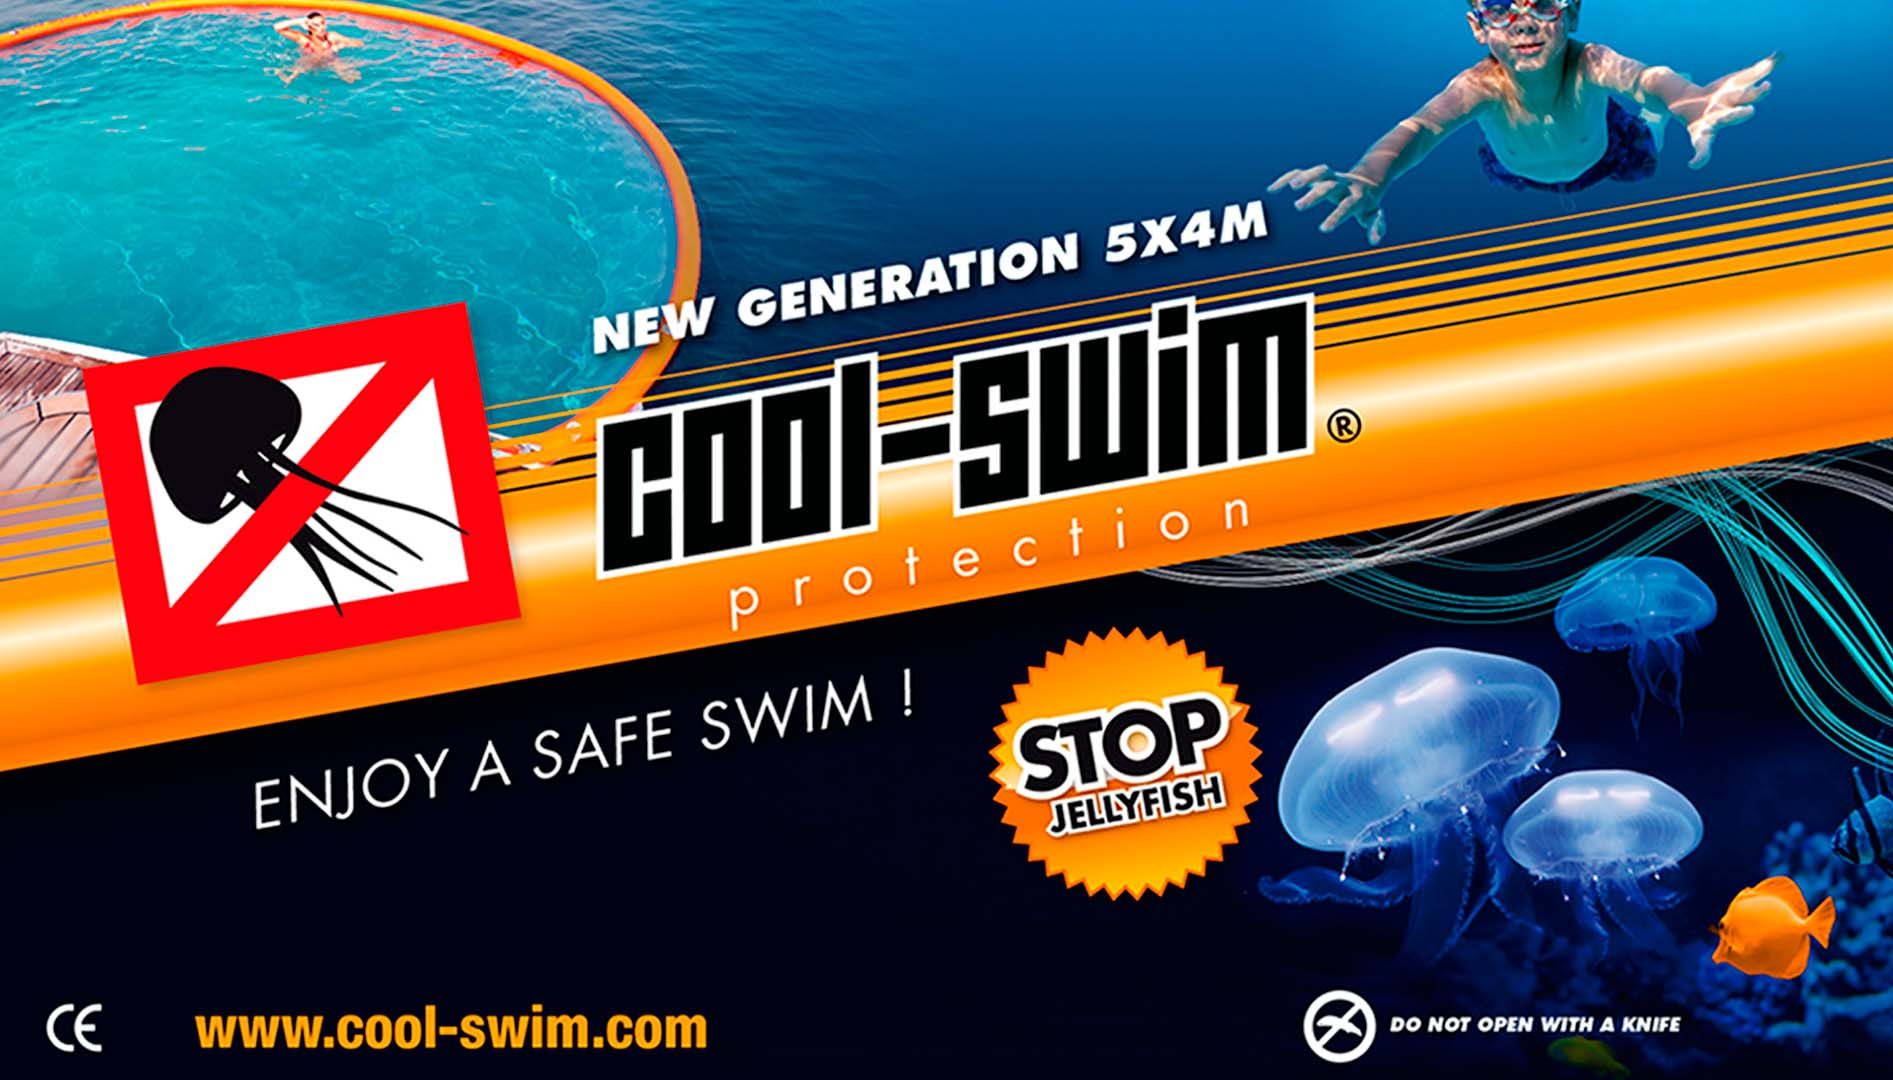 (c) Cool-swim.com